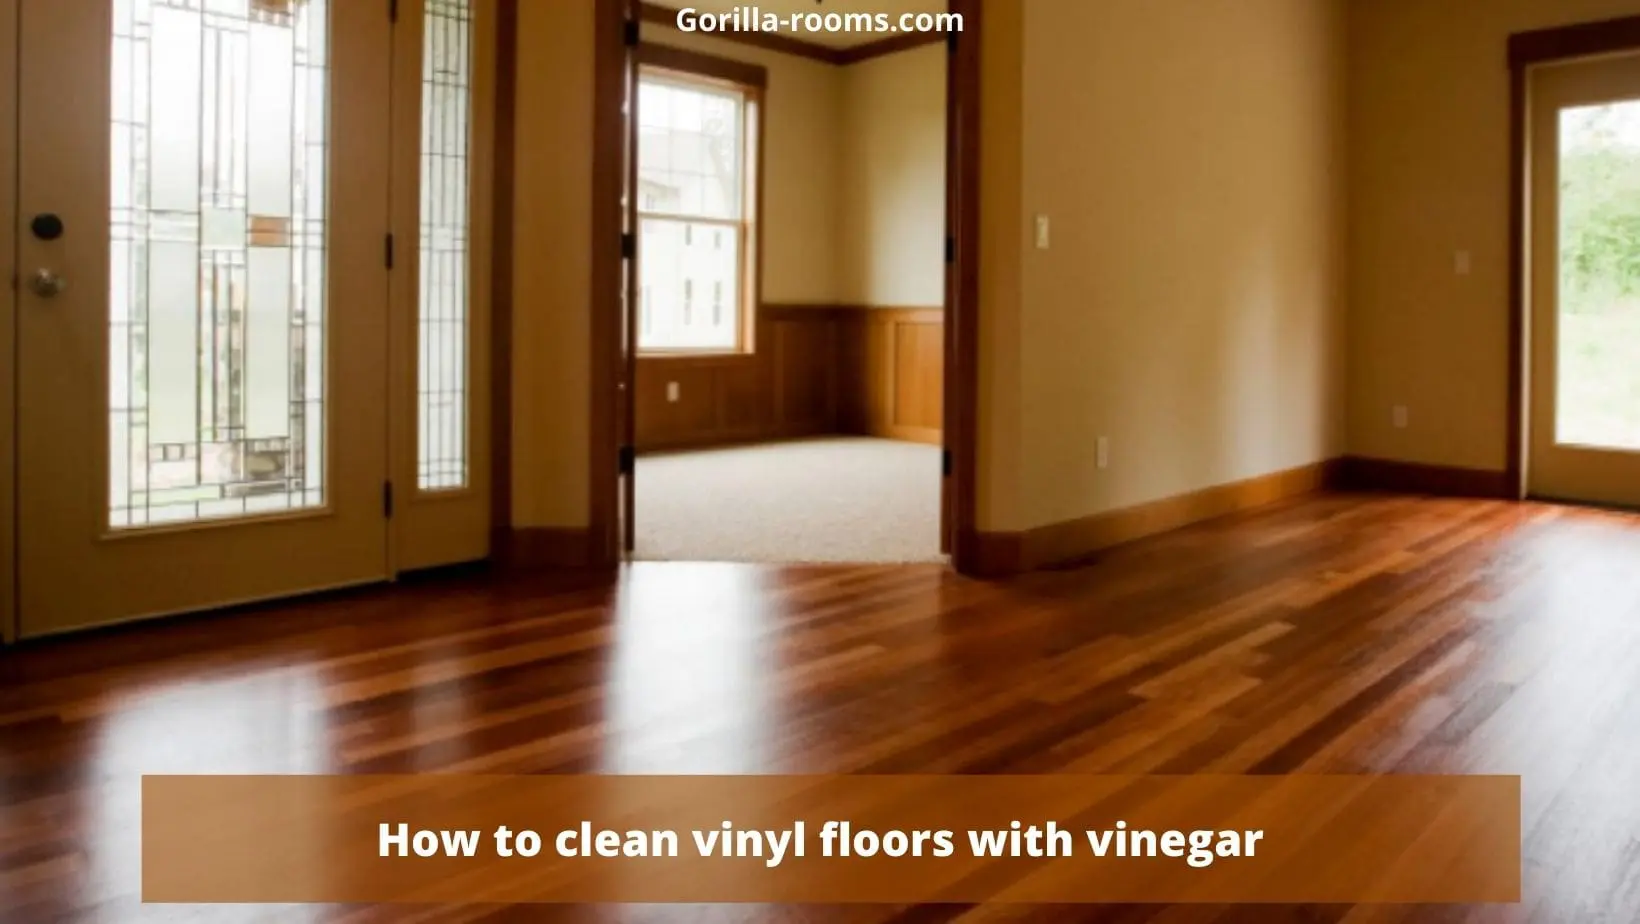 How to clean vinyl floors with vinegar